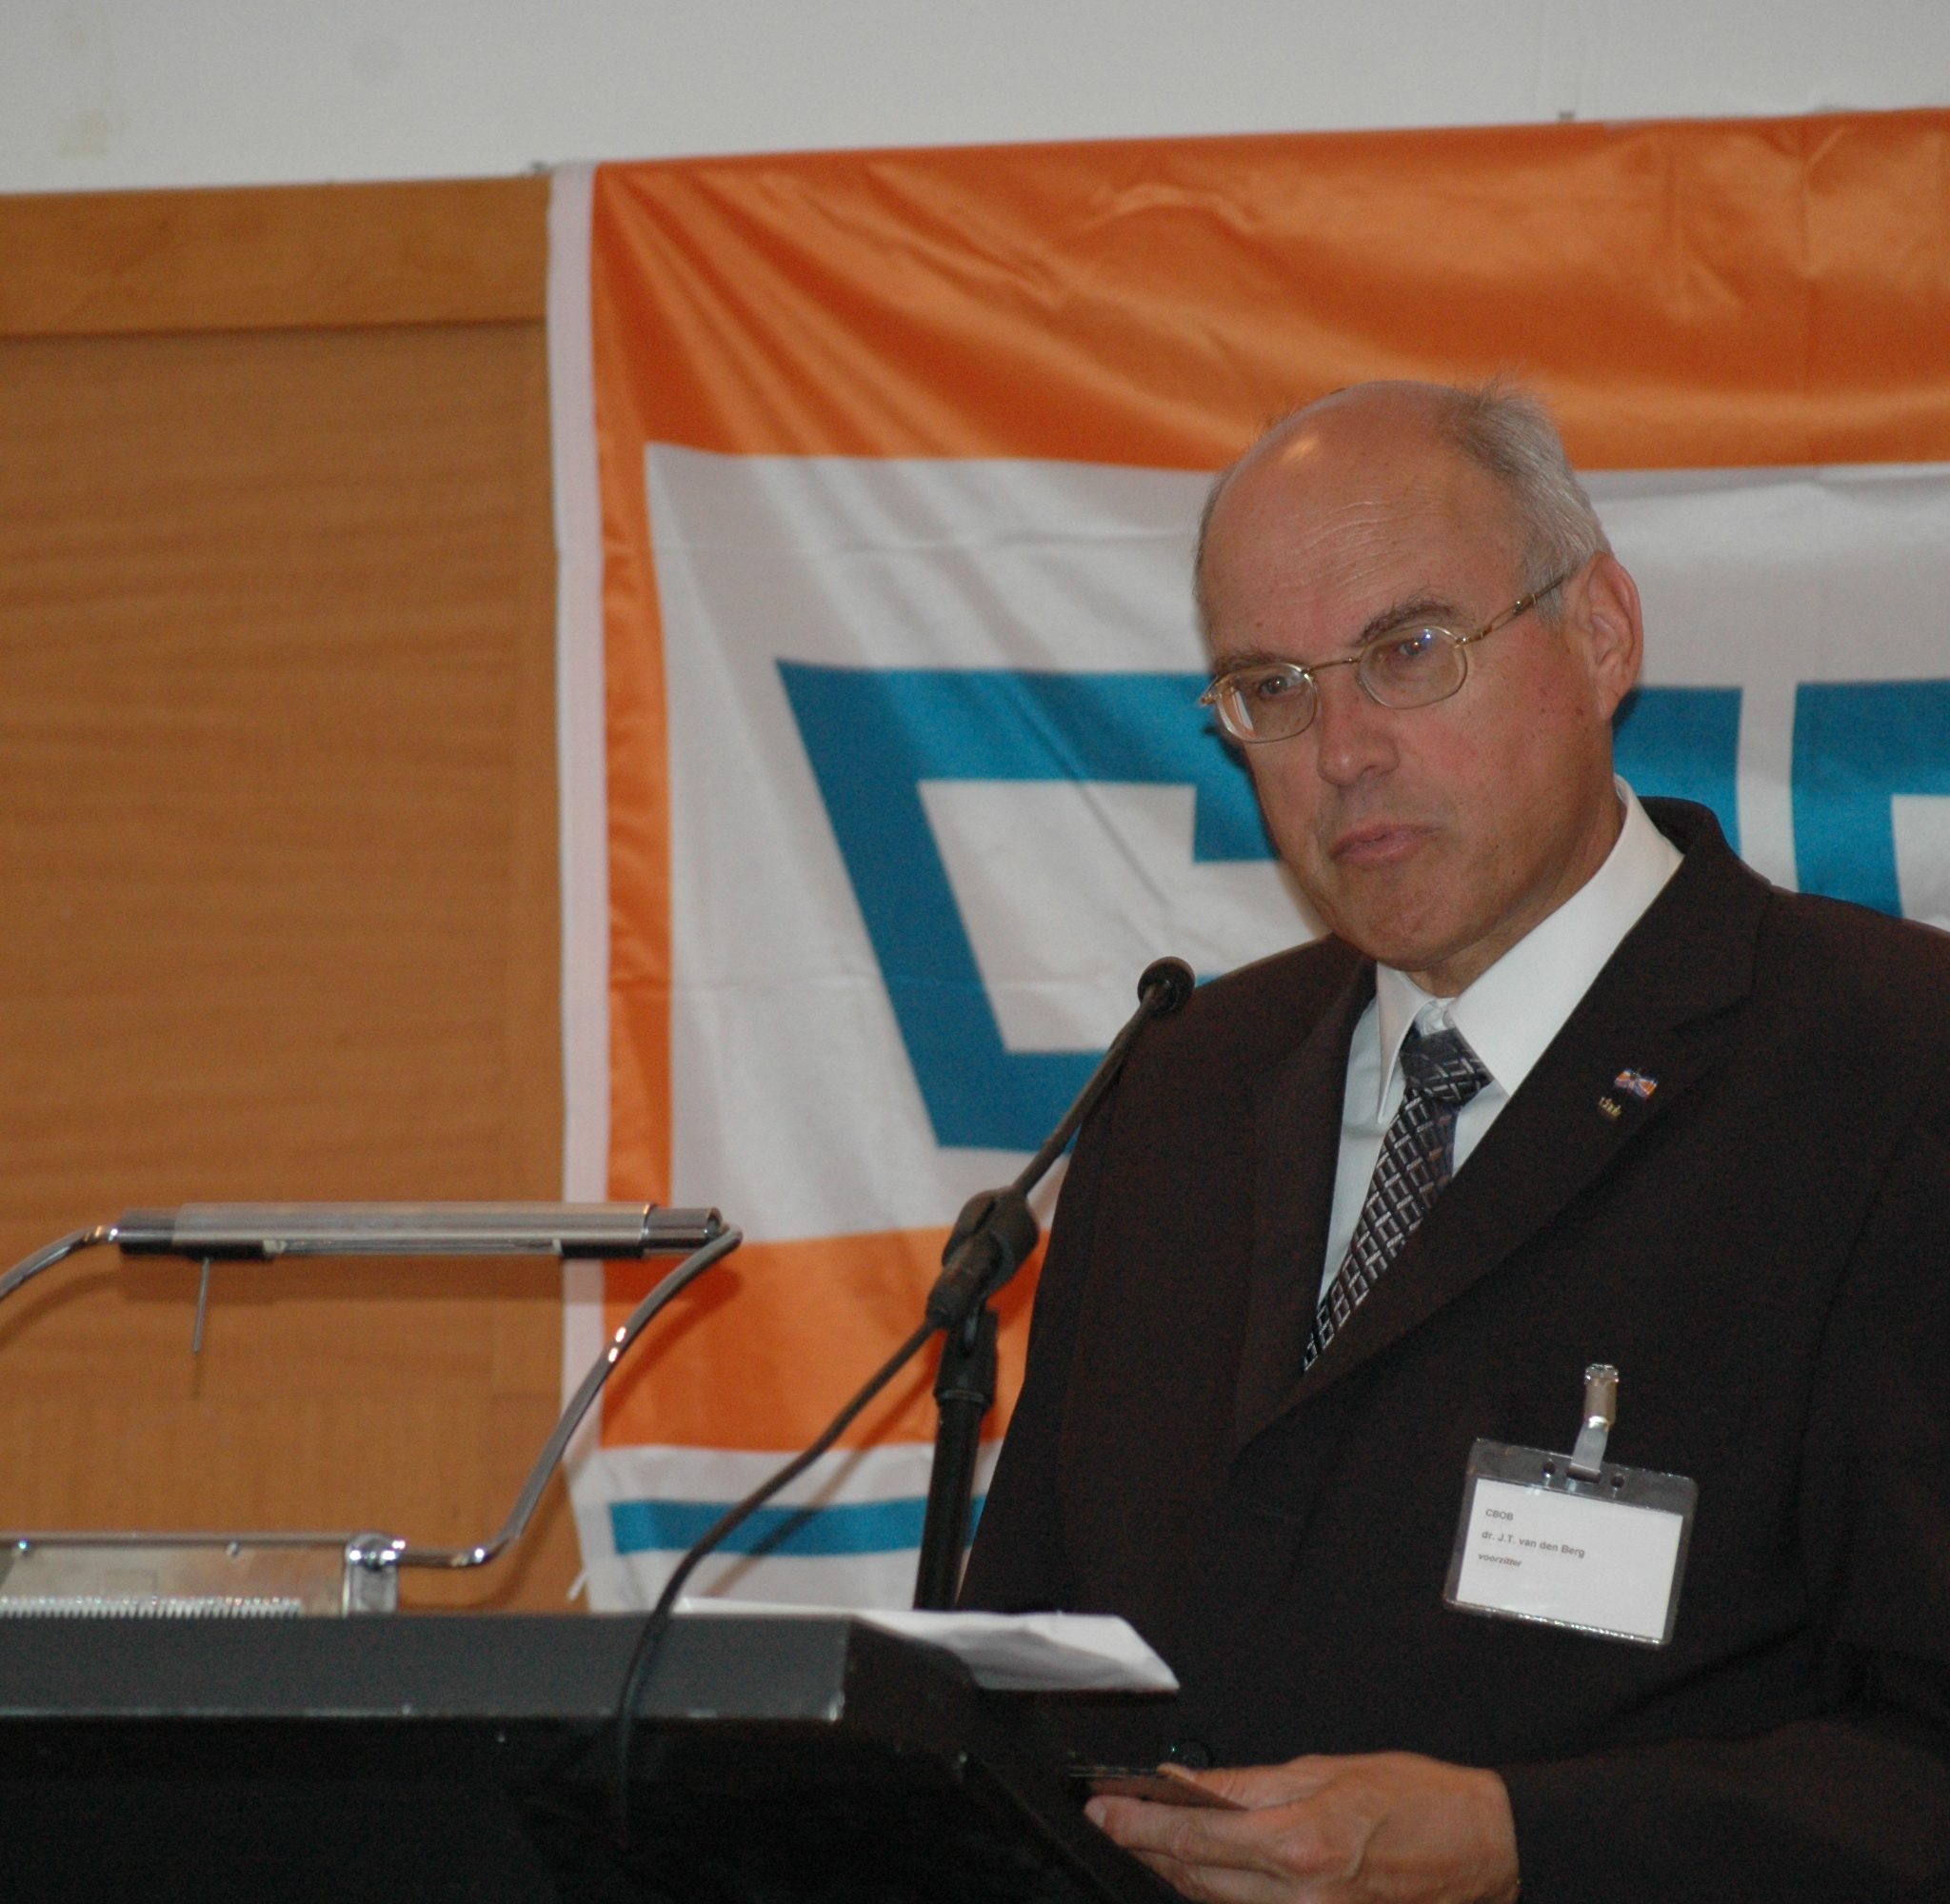 Oud-CBOB-voorzitter Koos van den Berg bij zijn afscheid in 2008: ’Ik verzeker u dat ik met warme gevoelens jegens de binnenvaart als geheel en de CBOB in het bijzonder afscheid neem.’ (Archieffoto Dirk van der Meulen)